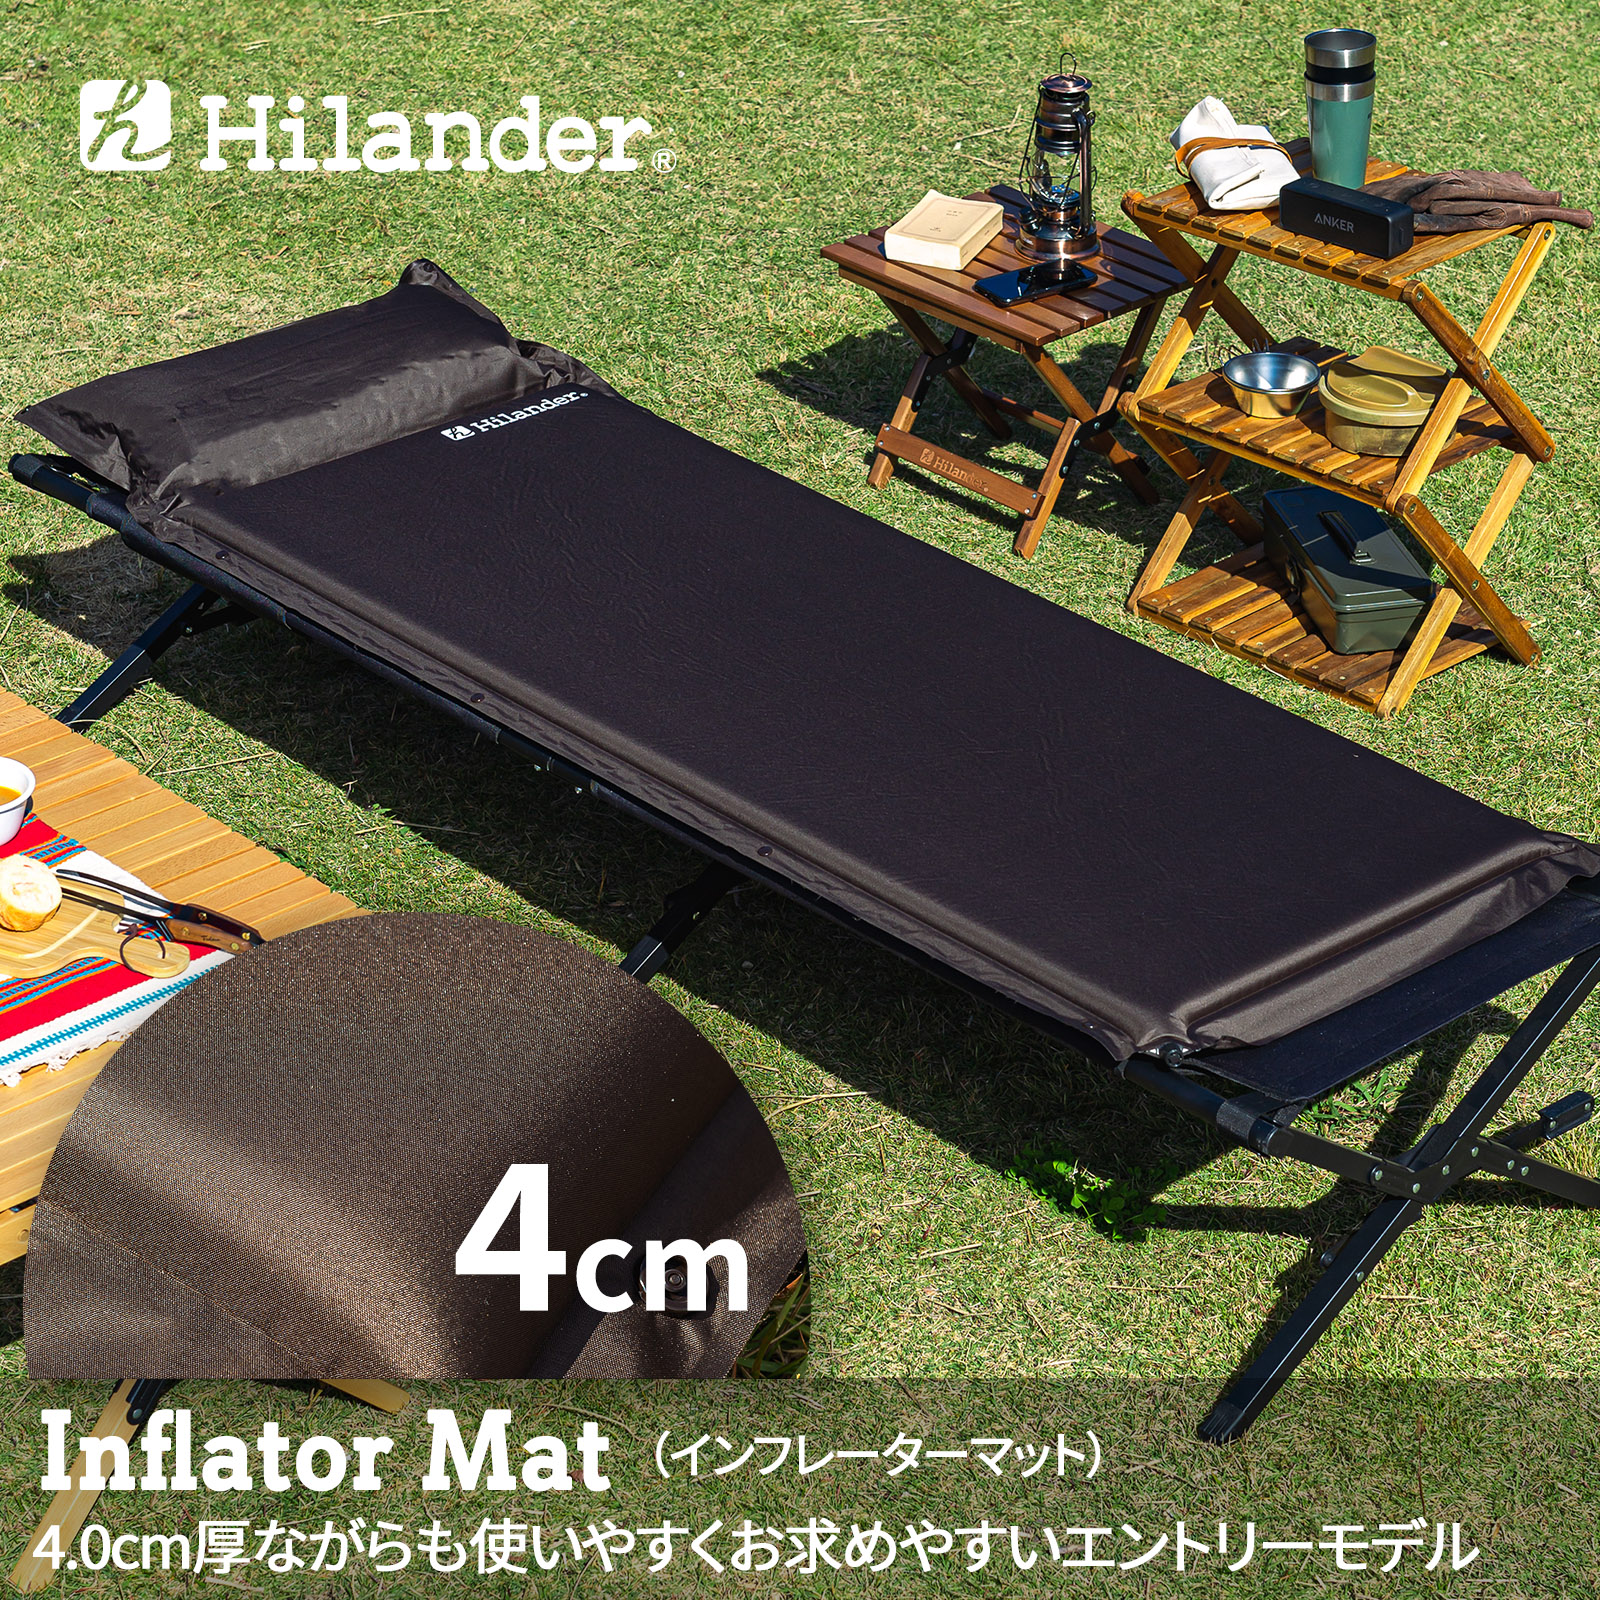 アウトドアマット Hilander ハイランダー インフレーターマット 枕付きタイプ シングル クリアランスsale!期間限定! ブラウン 4.0cm ストアー UK-8